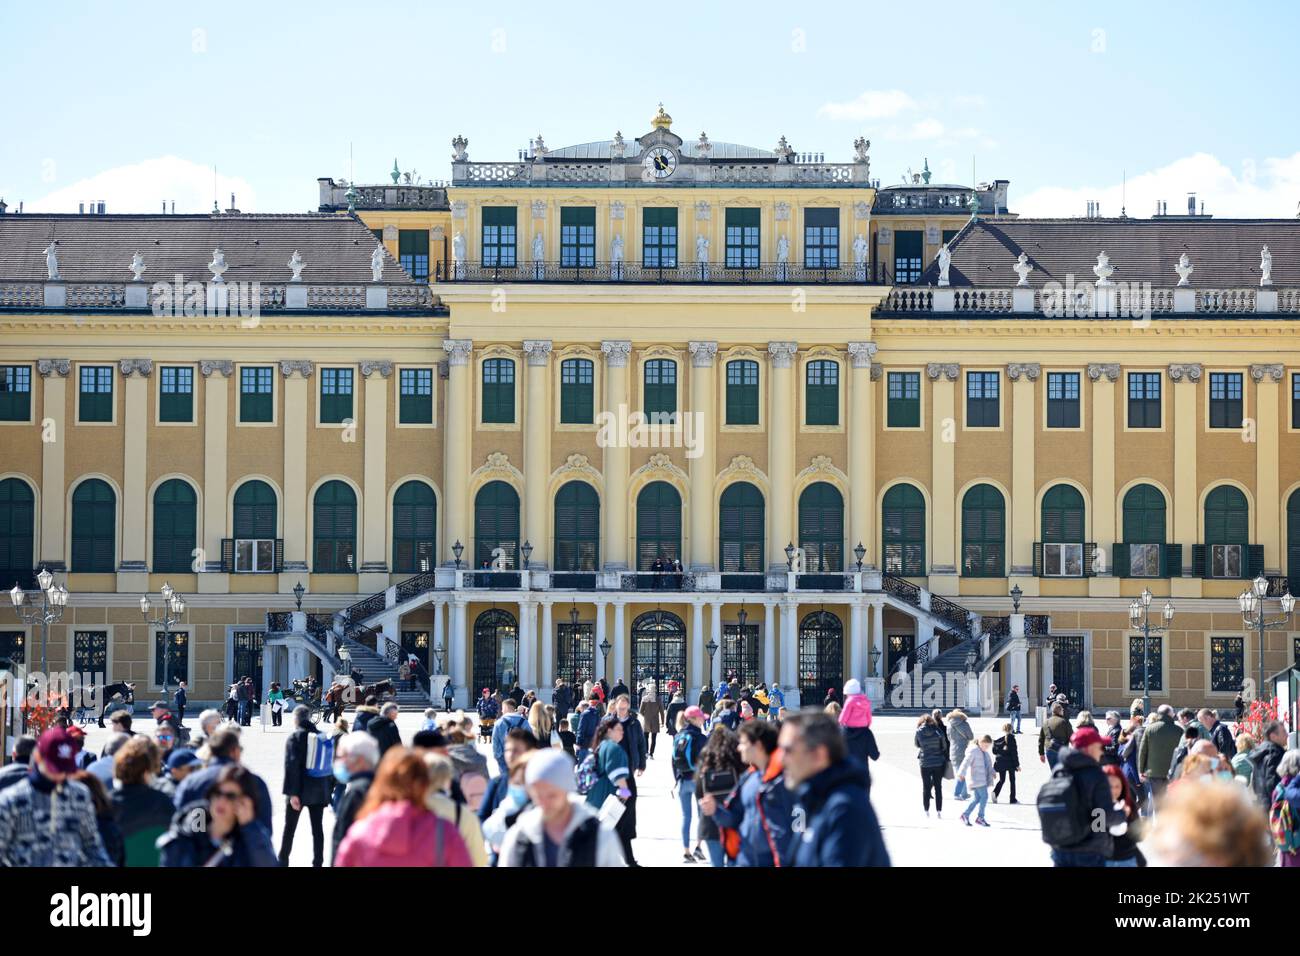 Viele Besucher beim weltberühmten Schloss Schönbrunn in Wien, Österreich - Many visitors and tourists at the world famous Schönbrunn Palace in Vienna, Stock Photo